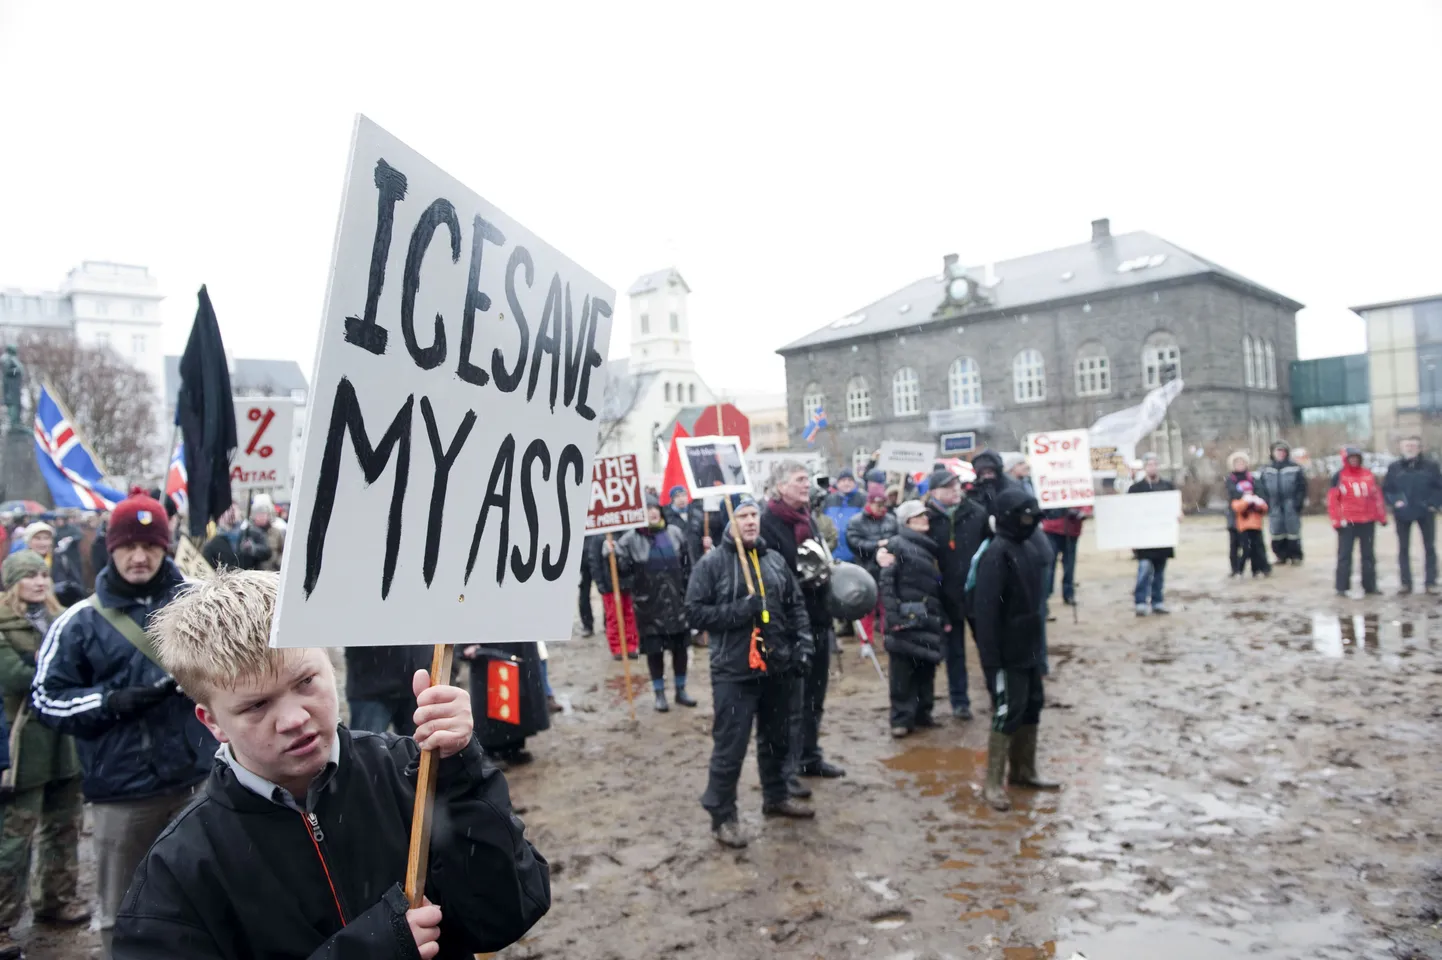 Islandlased näitasid rahvahääletusel nördimust poolteist aastat tagasi riiki tabanud majanduskrahhi üle, milles rahvas süüdistab pankureid ja poliitikuid.